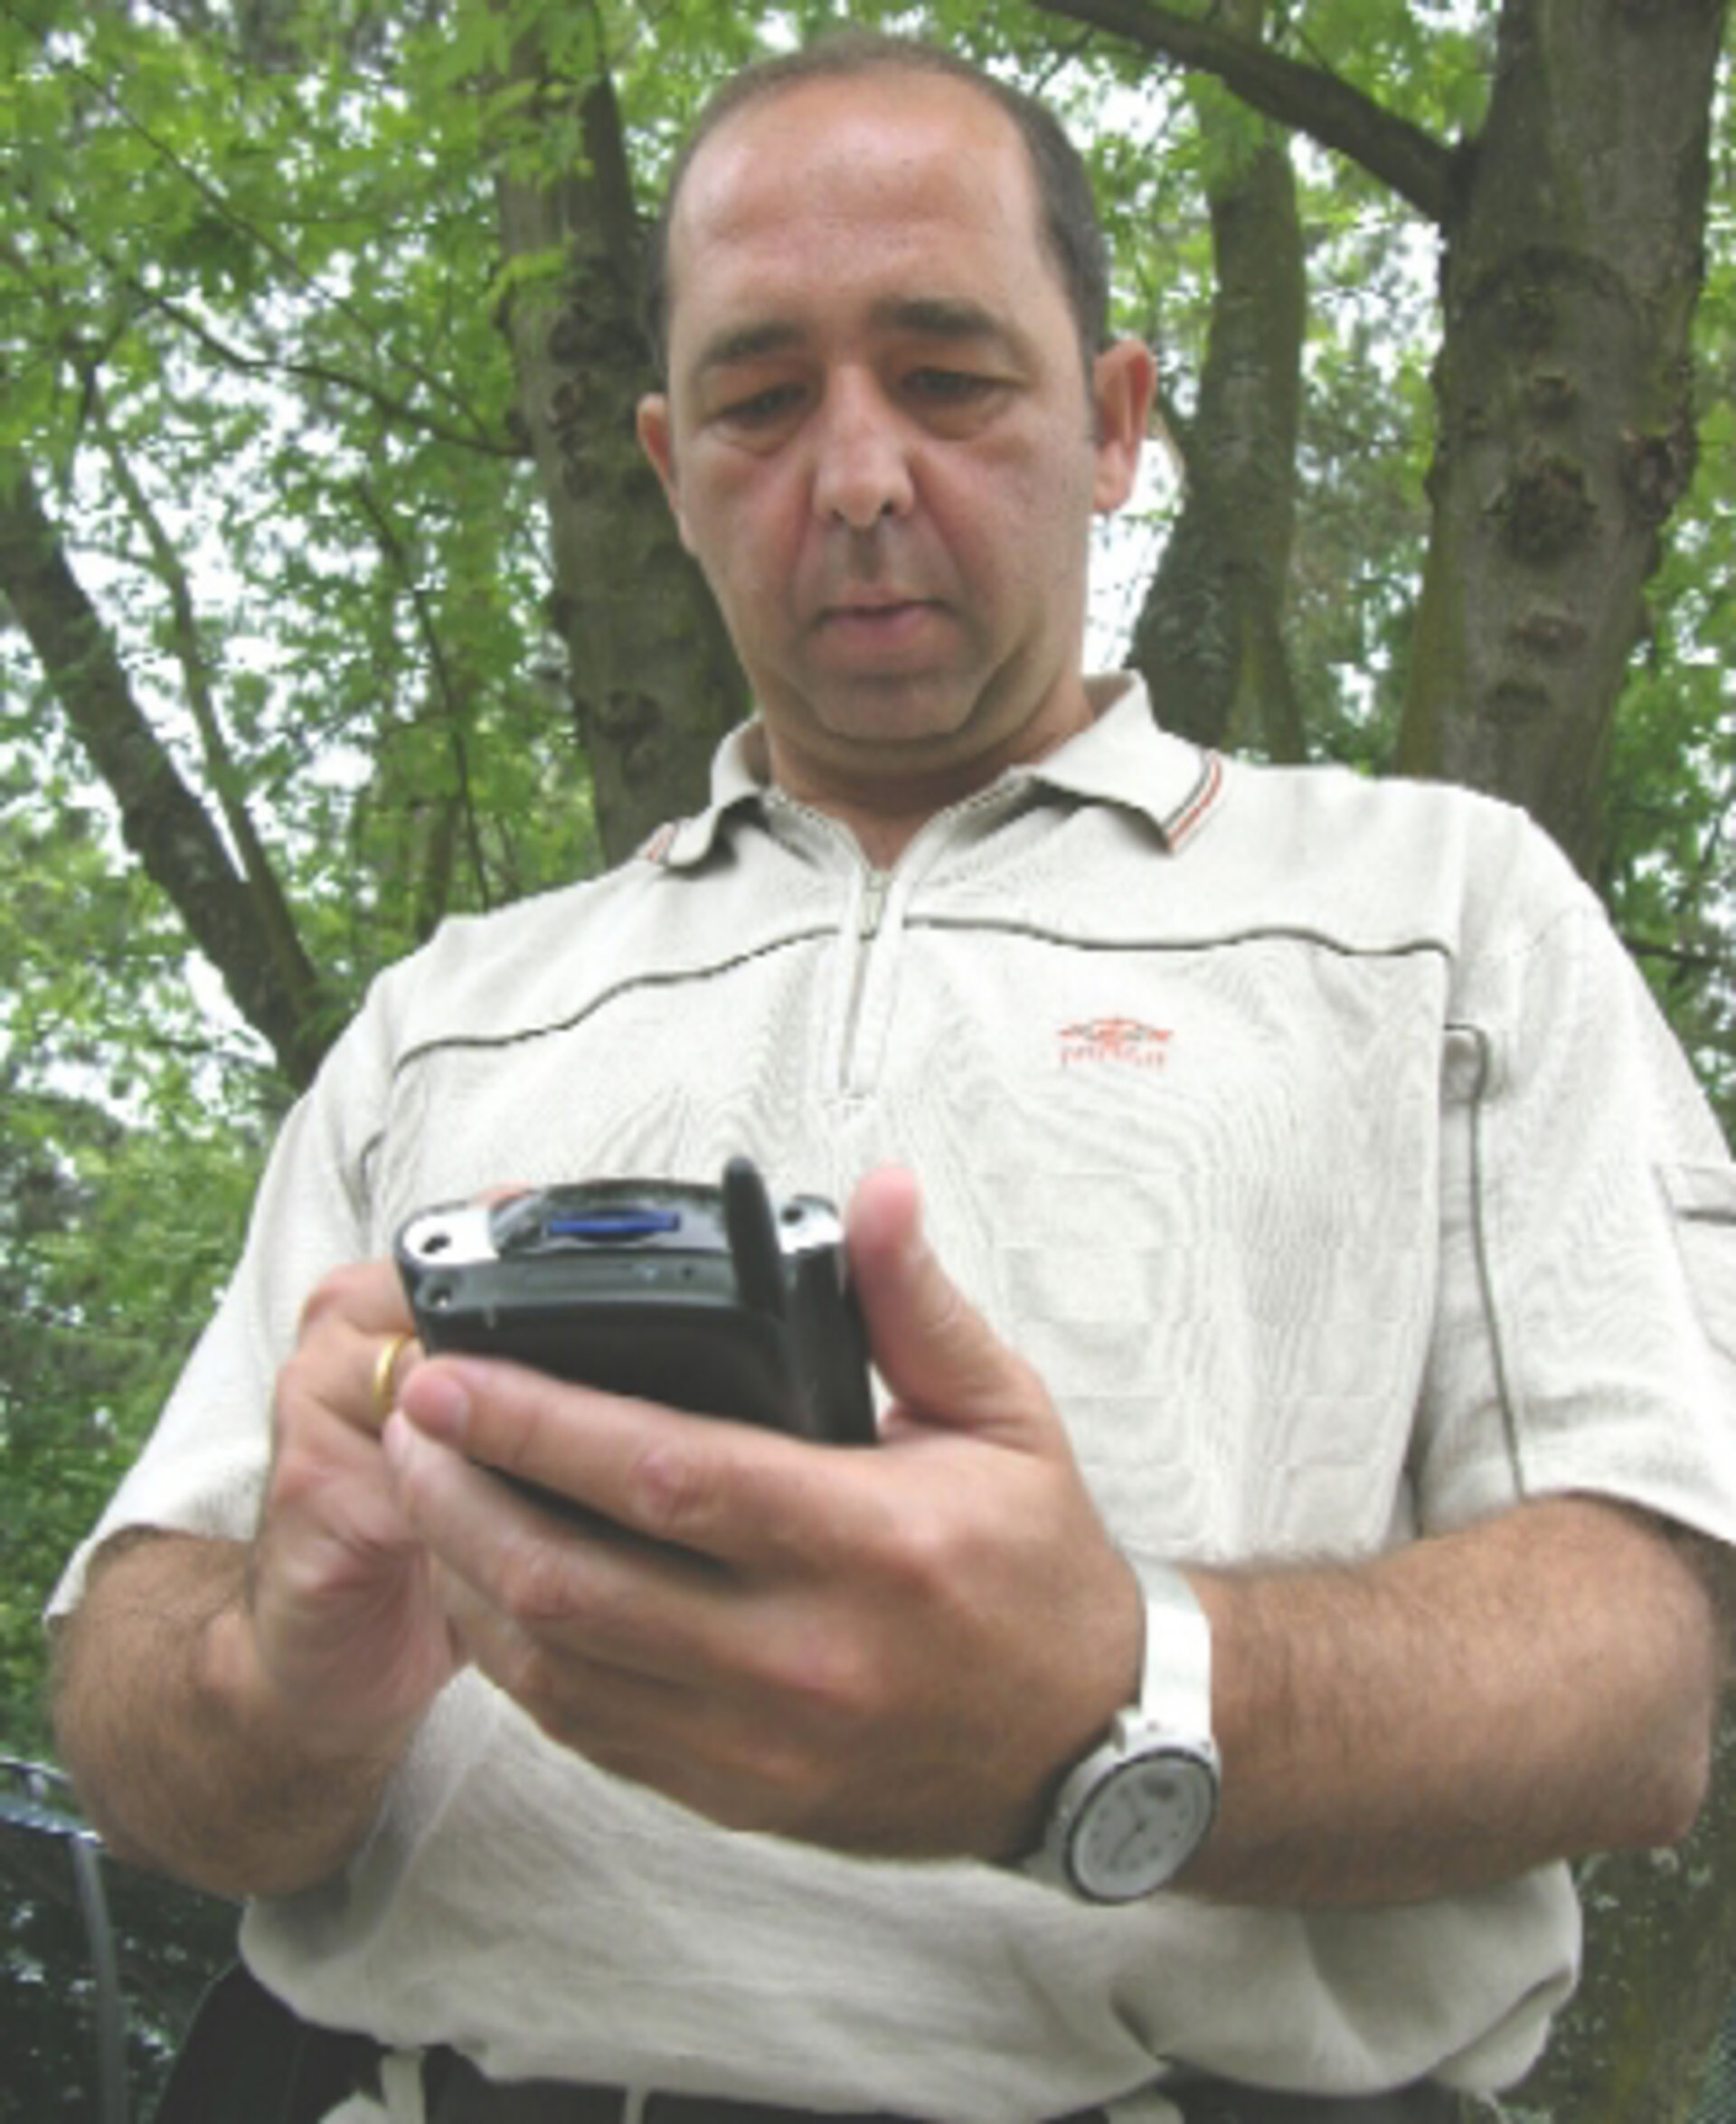 Ein schneller Check von SMART 1 beim Spaziergang mit einem PDA